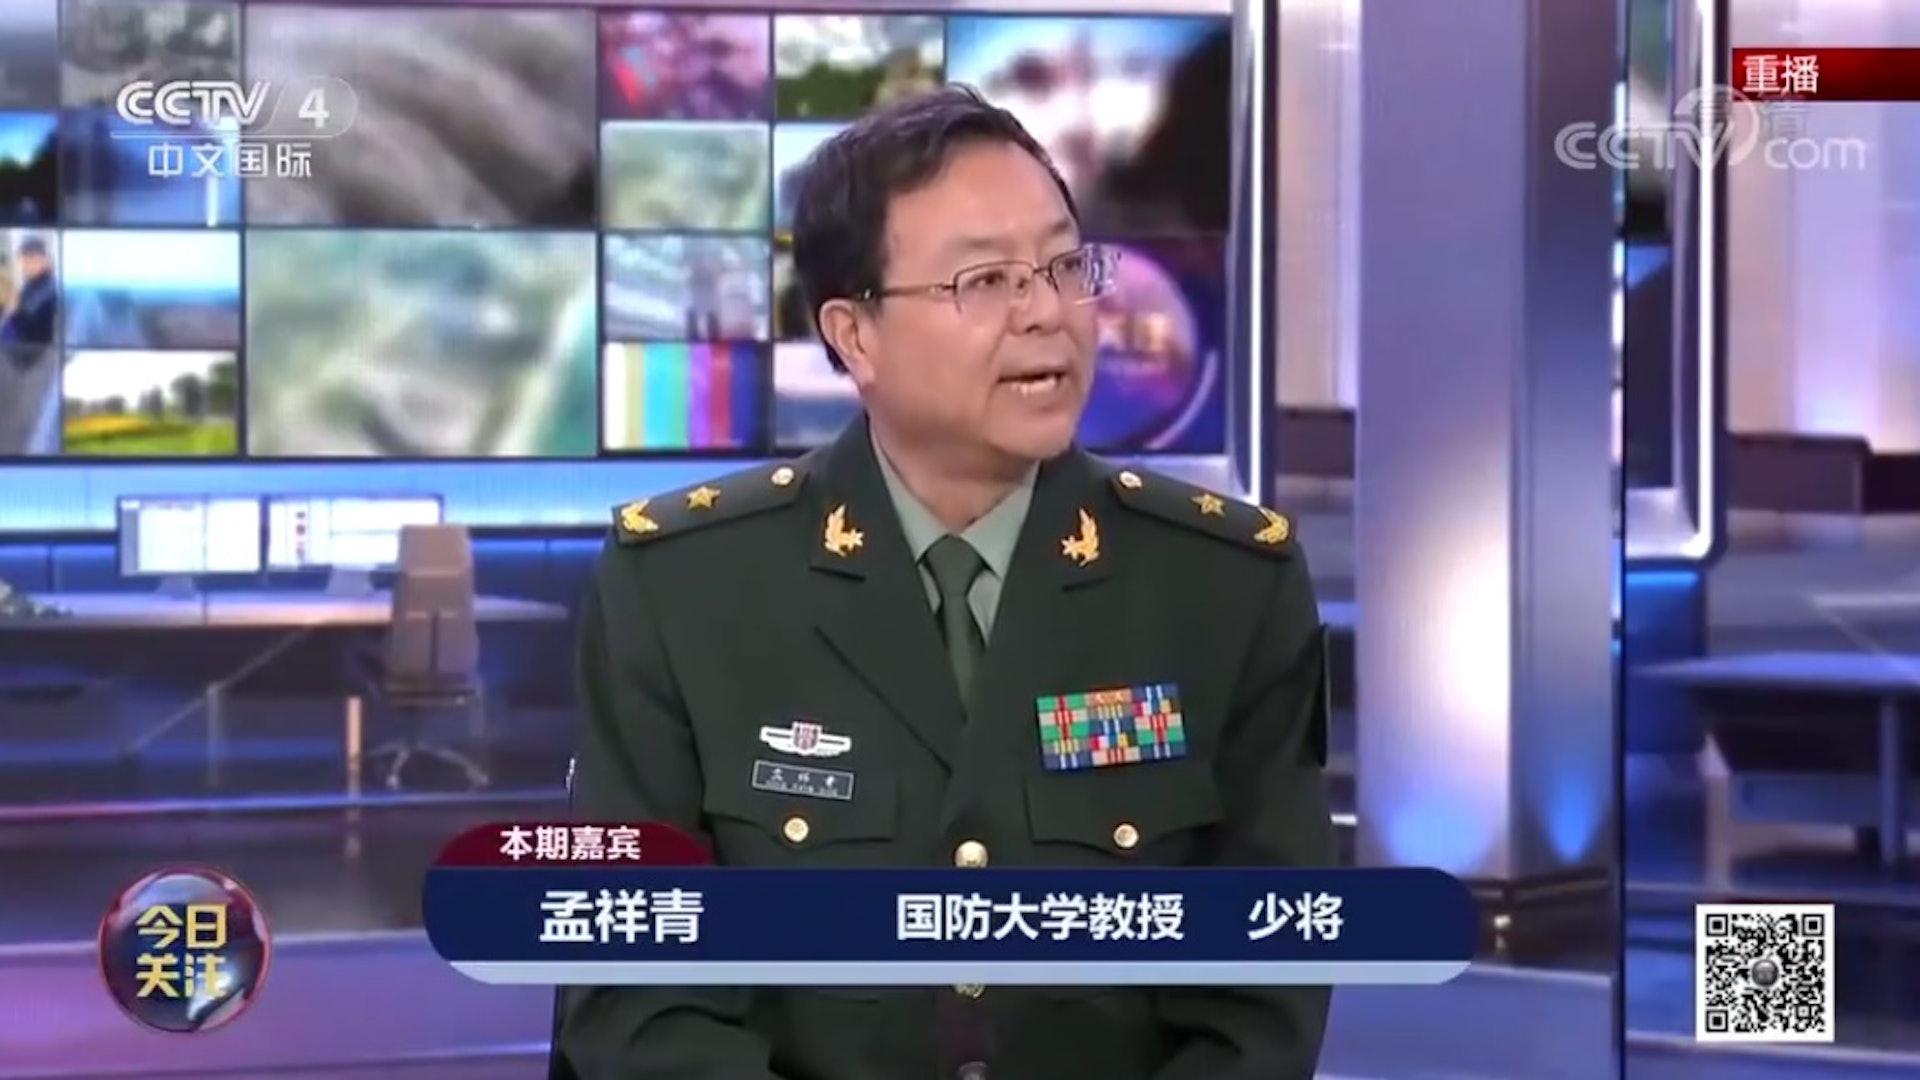 国防大学教授孟祥青。 （影片截图）